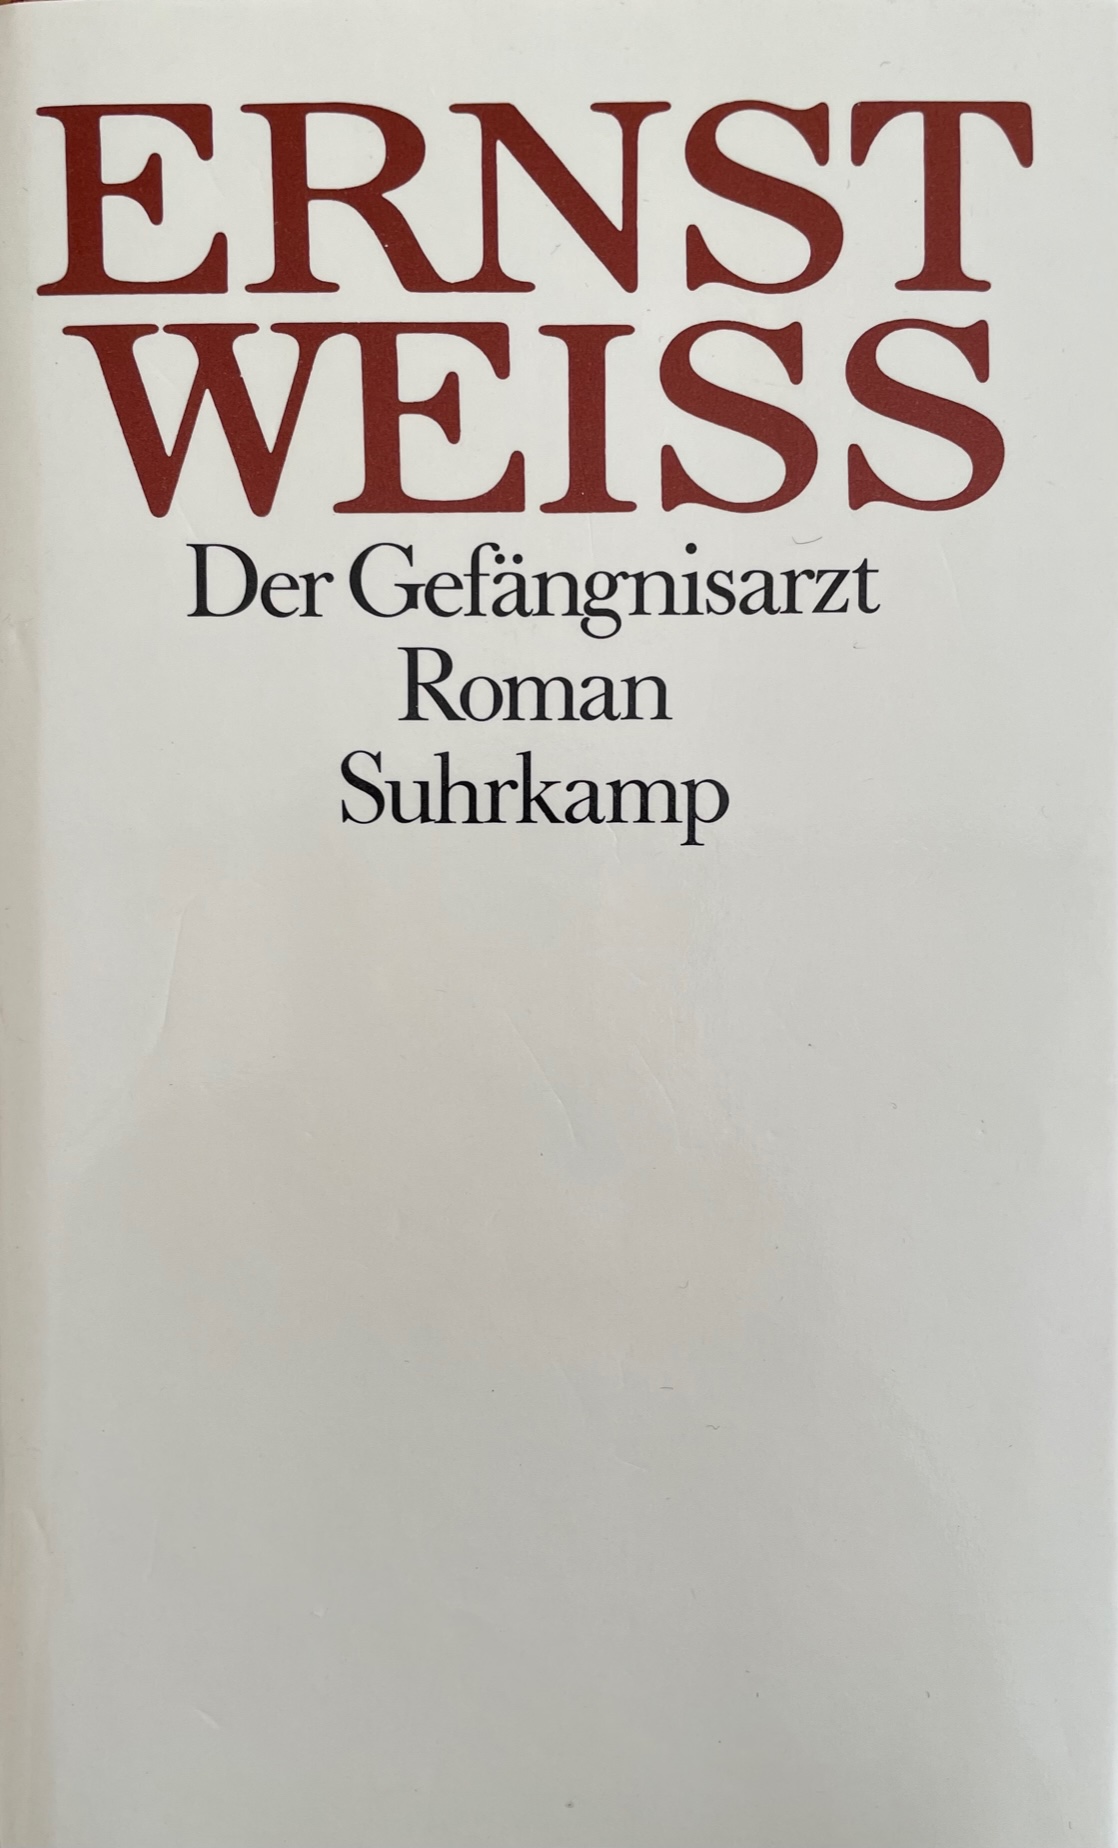 Gebundene Ausgabe der Gesammelten Werke von Ernst Weiß von 1982